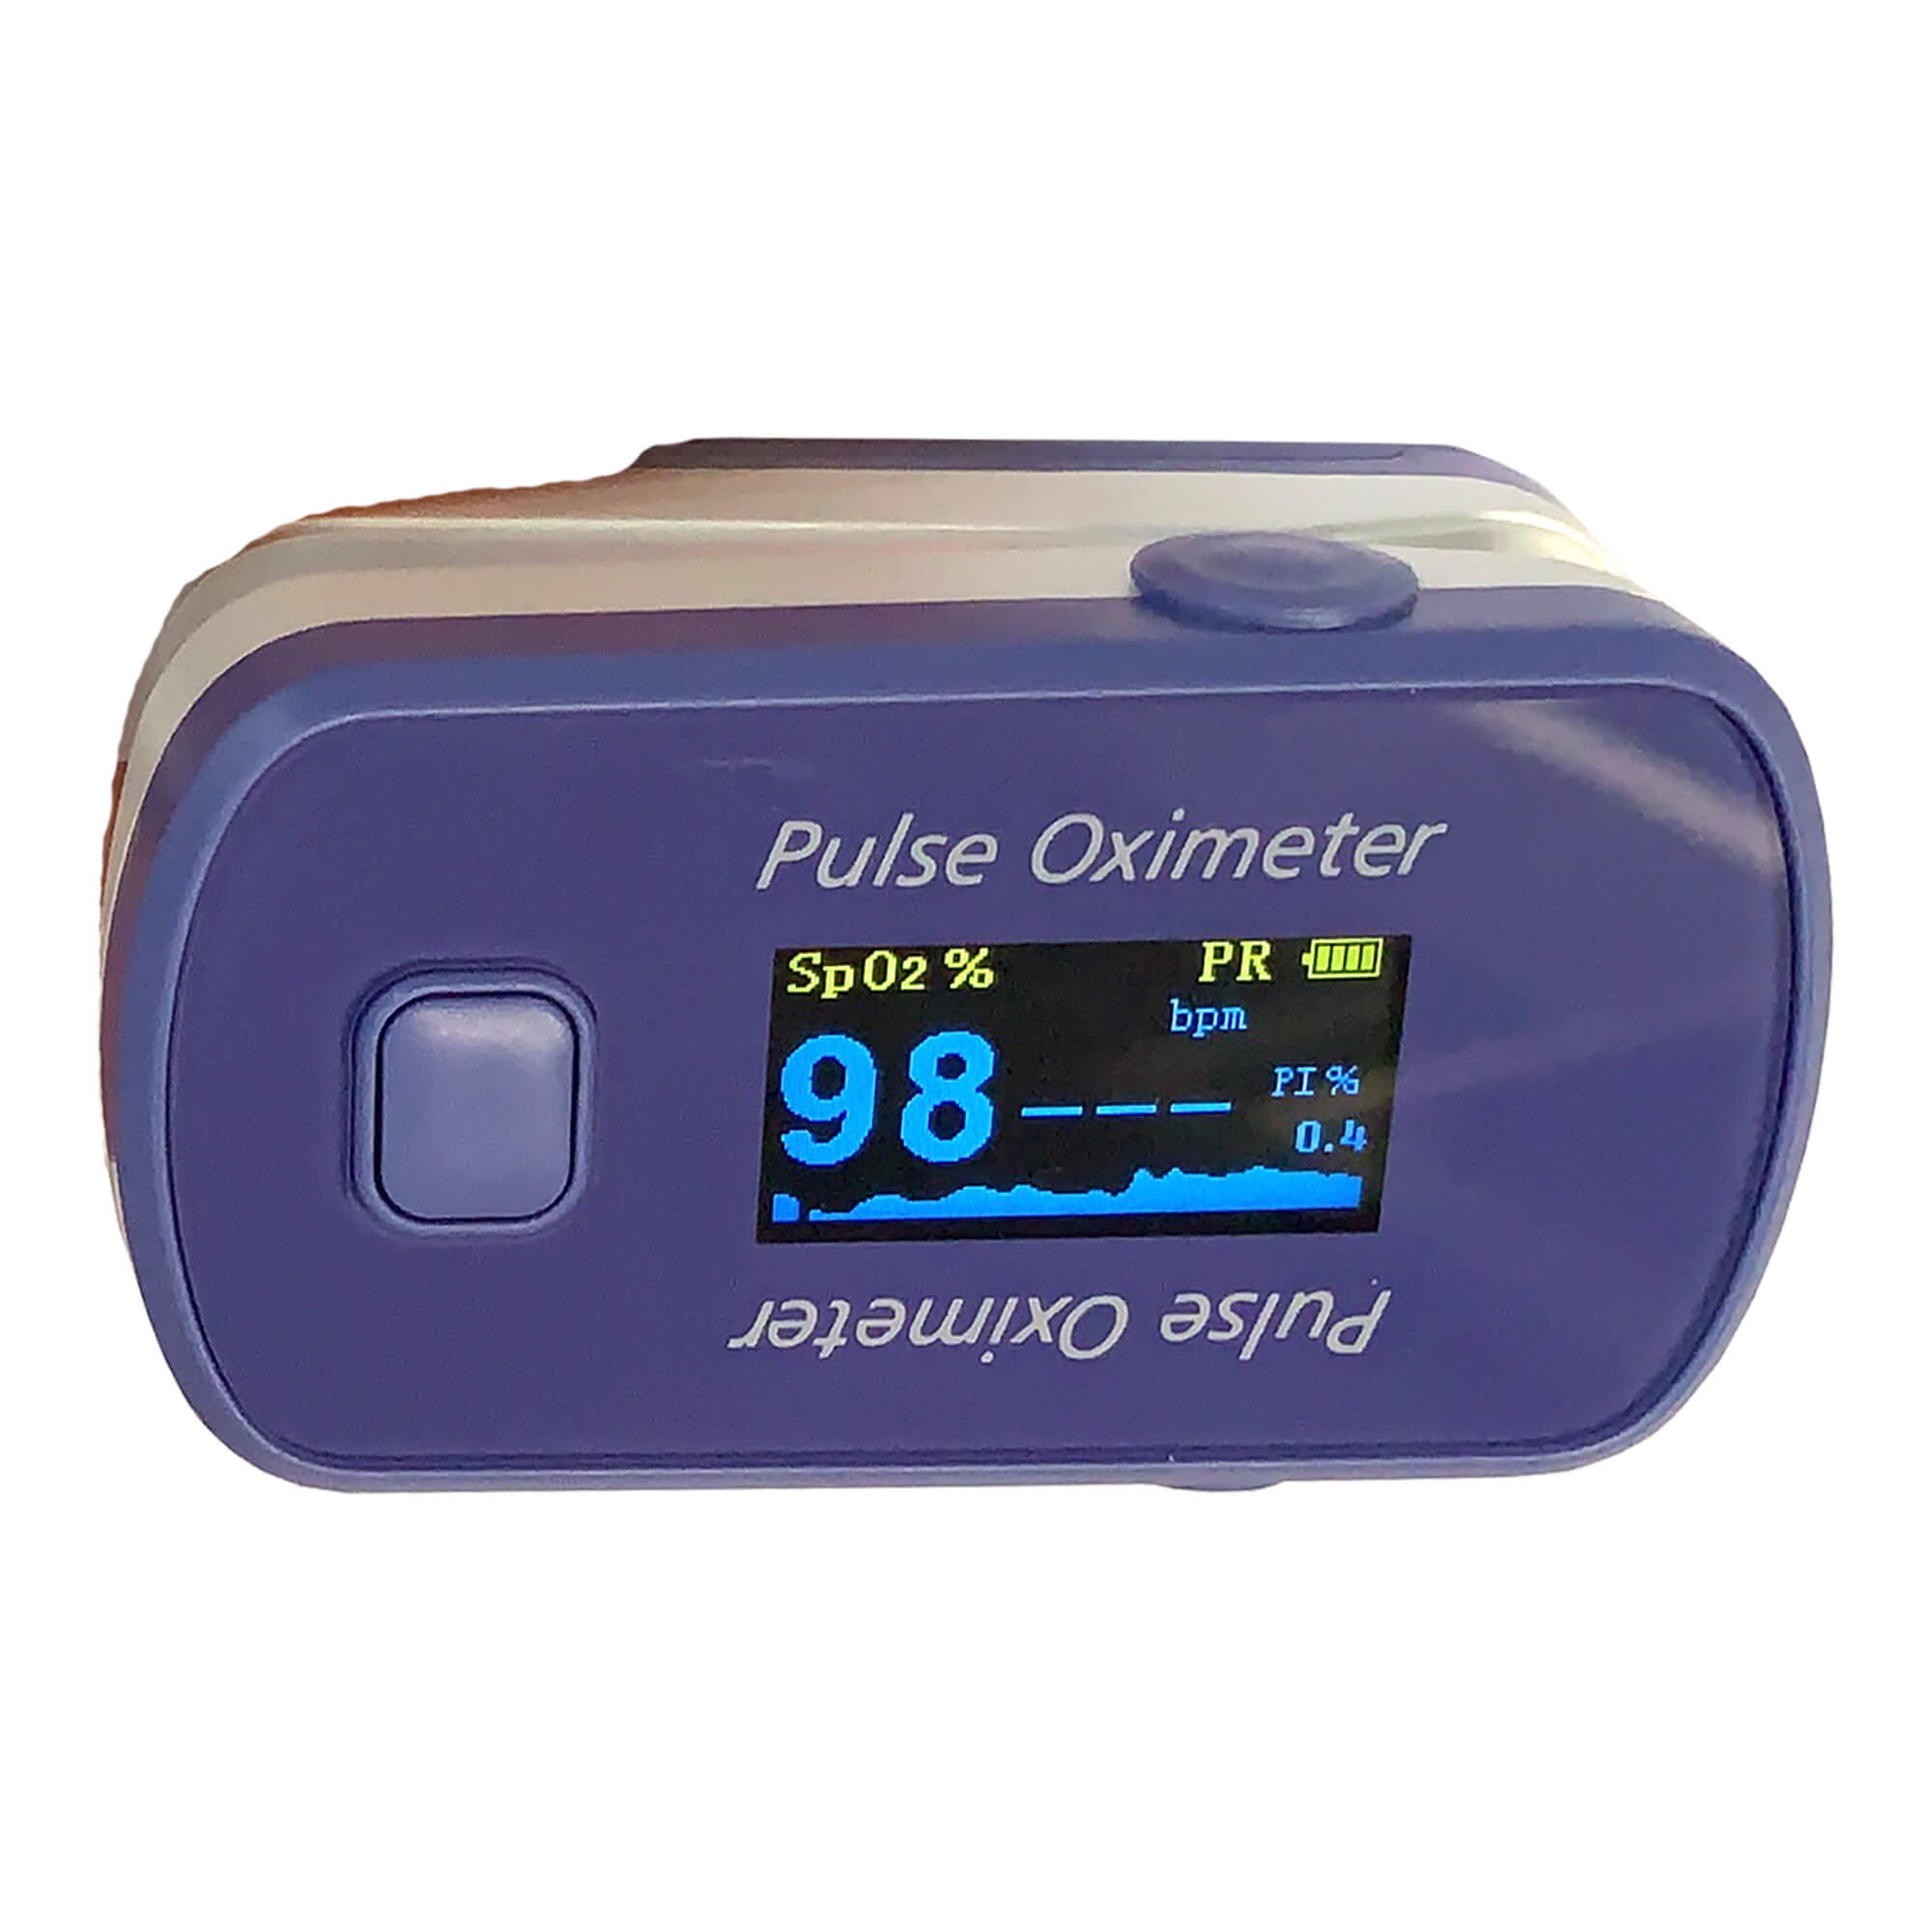 Finger-Puls-Oximeter. Zuverlässige Messung von Sauerstoffsättigung und Pulsrate.